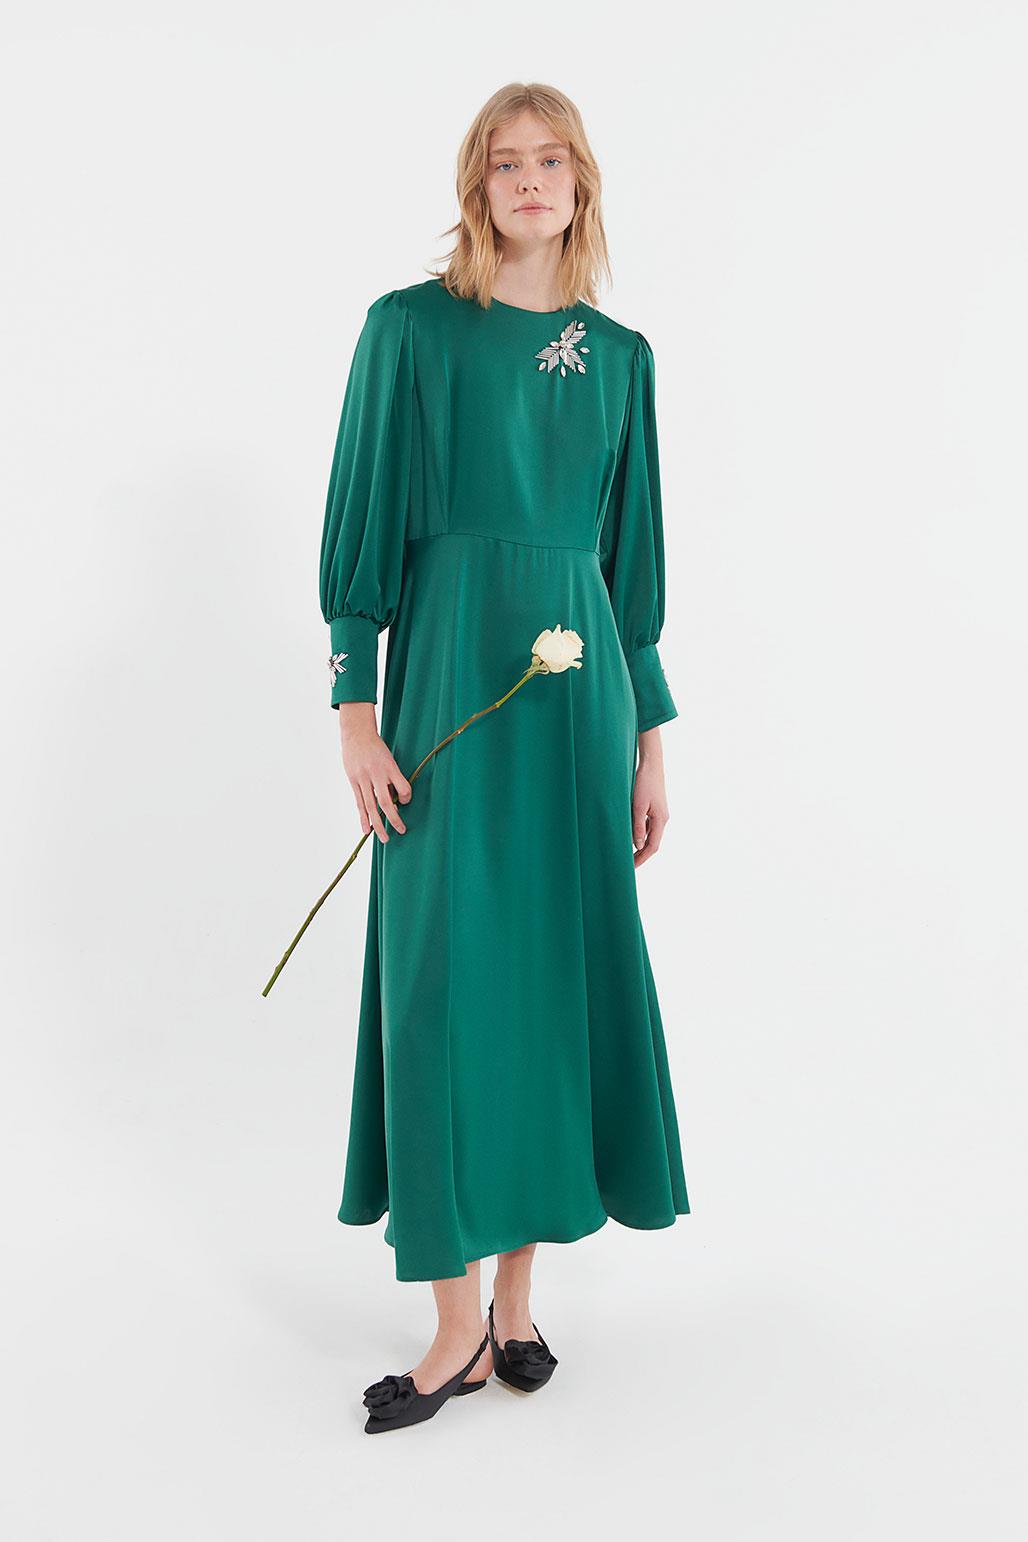 İşlemeli Kloş Elbise Zümrüt Yeşili